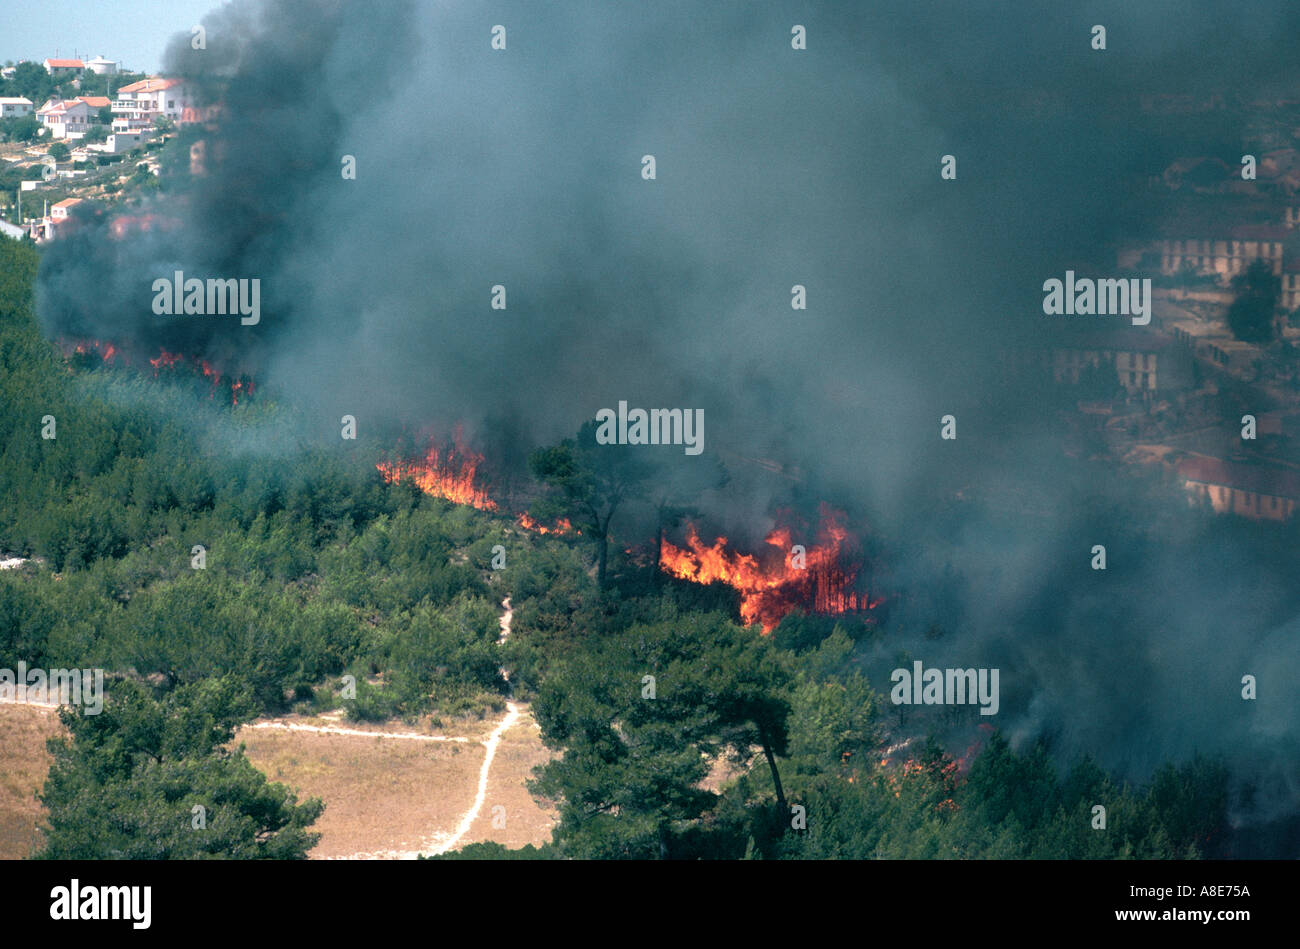 Vue aérienne d'un incendie, les flammes, les incendies de forêt de la fumée noire, menaçant les bâtiments de la ville, Bouches-du-Rhône, Provence, France, Europe, Banque D'Images